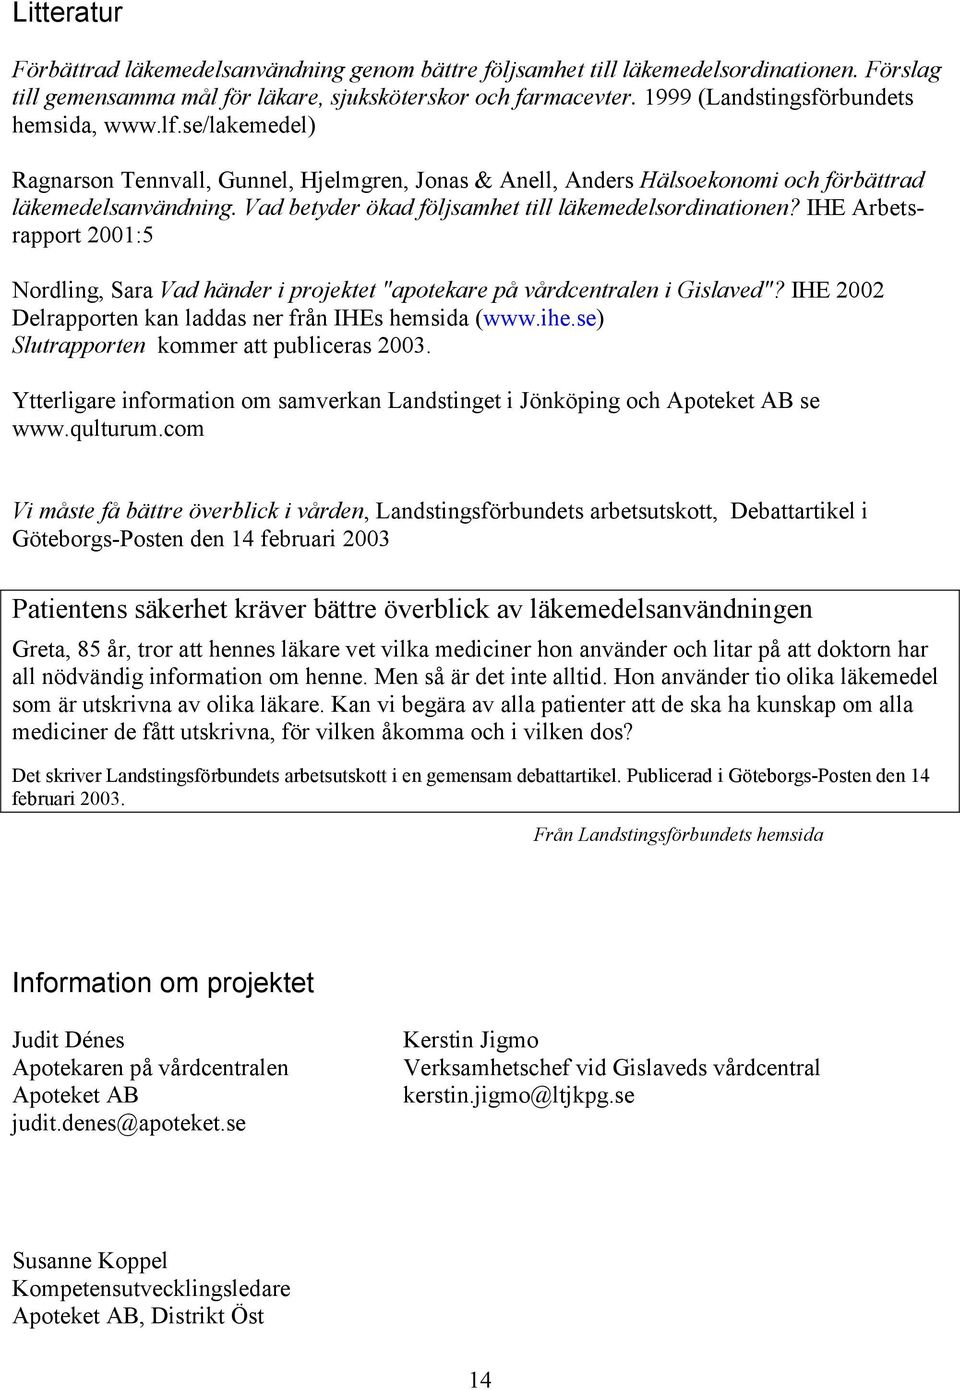 Vad betyder ökad följsamhet till läkemedelsordinationen? IHE Arbetsrapport 2001:5 Nordling, Sara Vad händer i projektet "apotekare på vårdcentralen i Gislaved"?